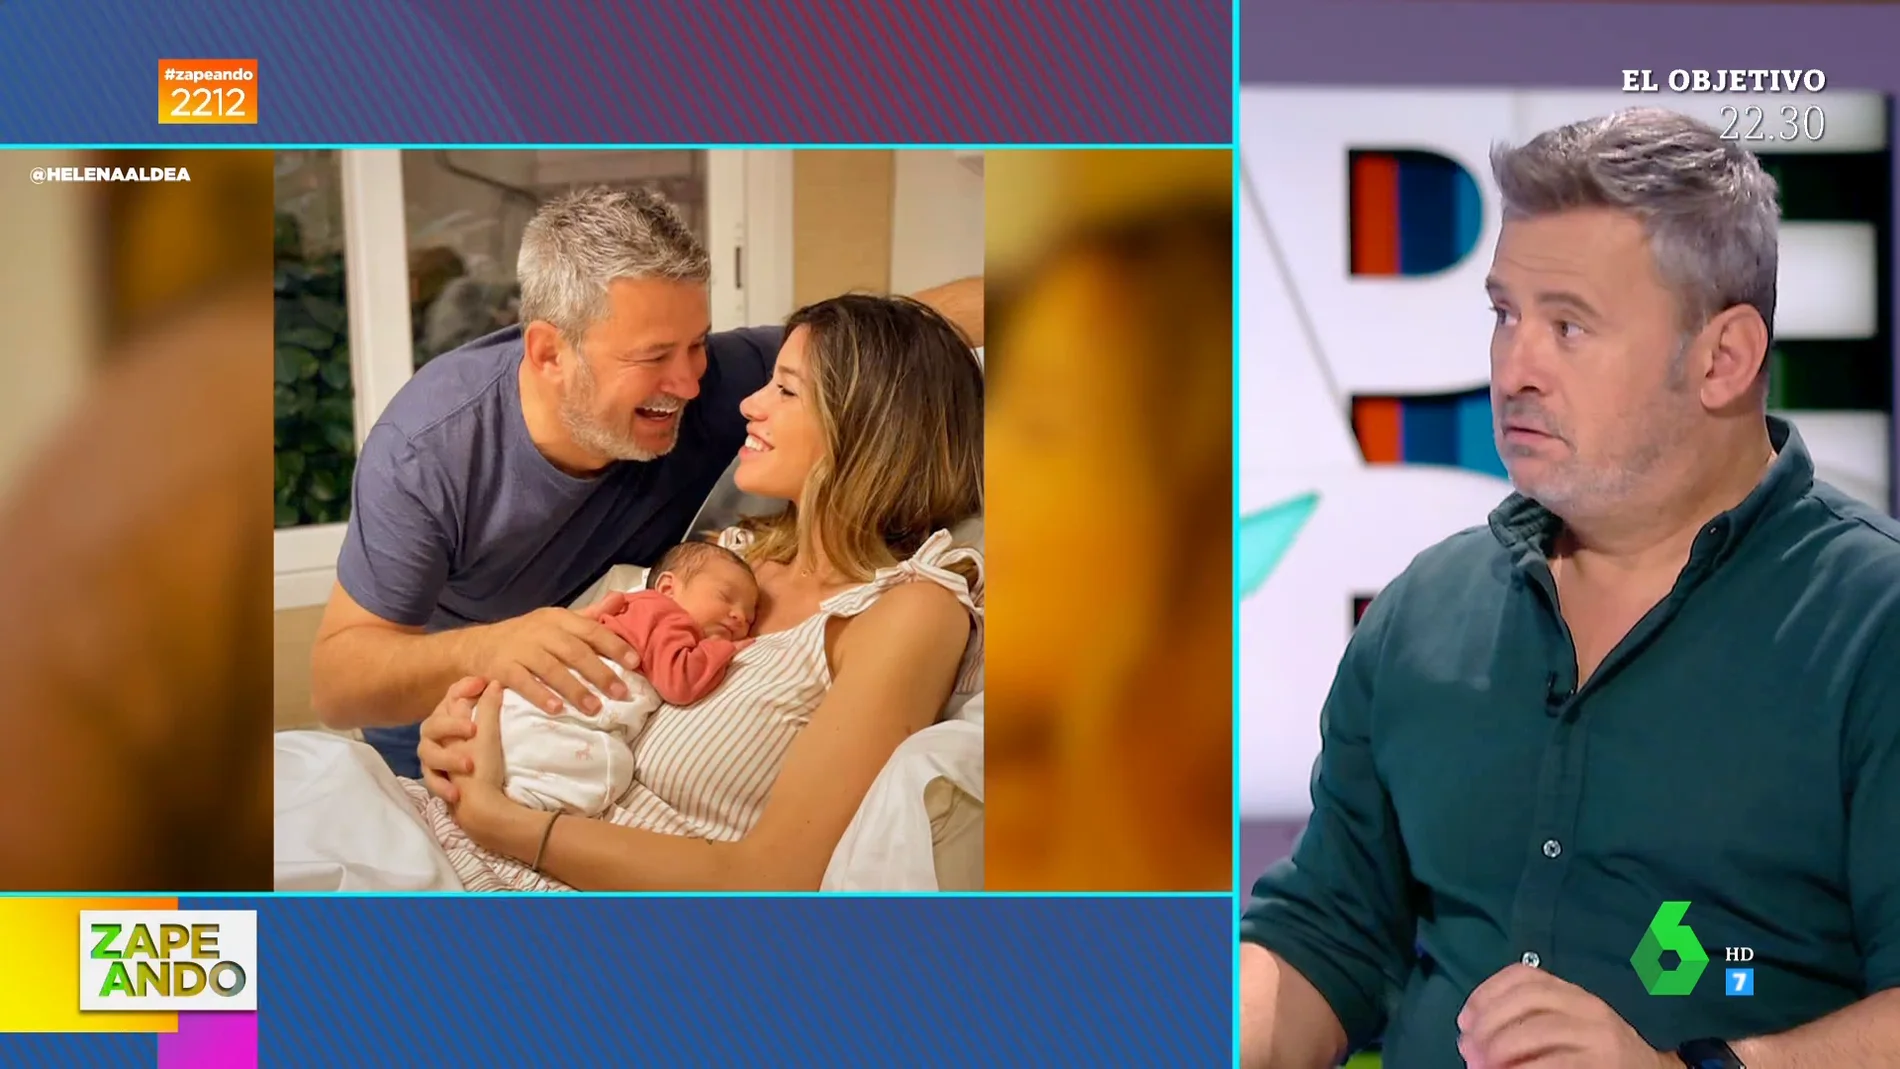 Miki Nadal regresa a Zapeando con su mítico humor tras nacer su hija Galatea: "Soy padre, pero podría ser abuelo"